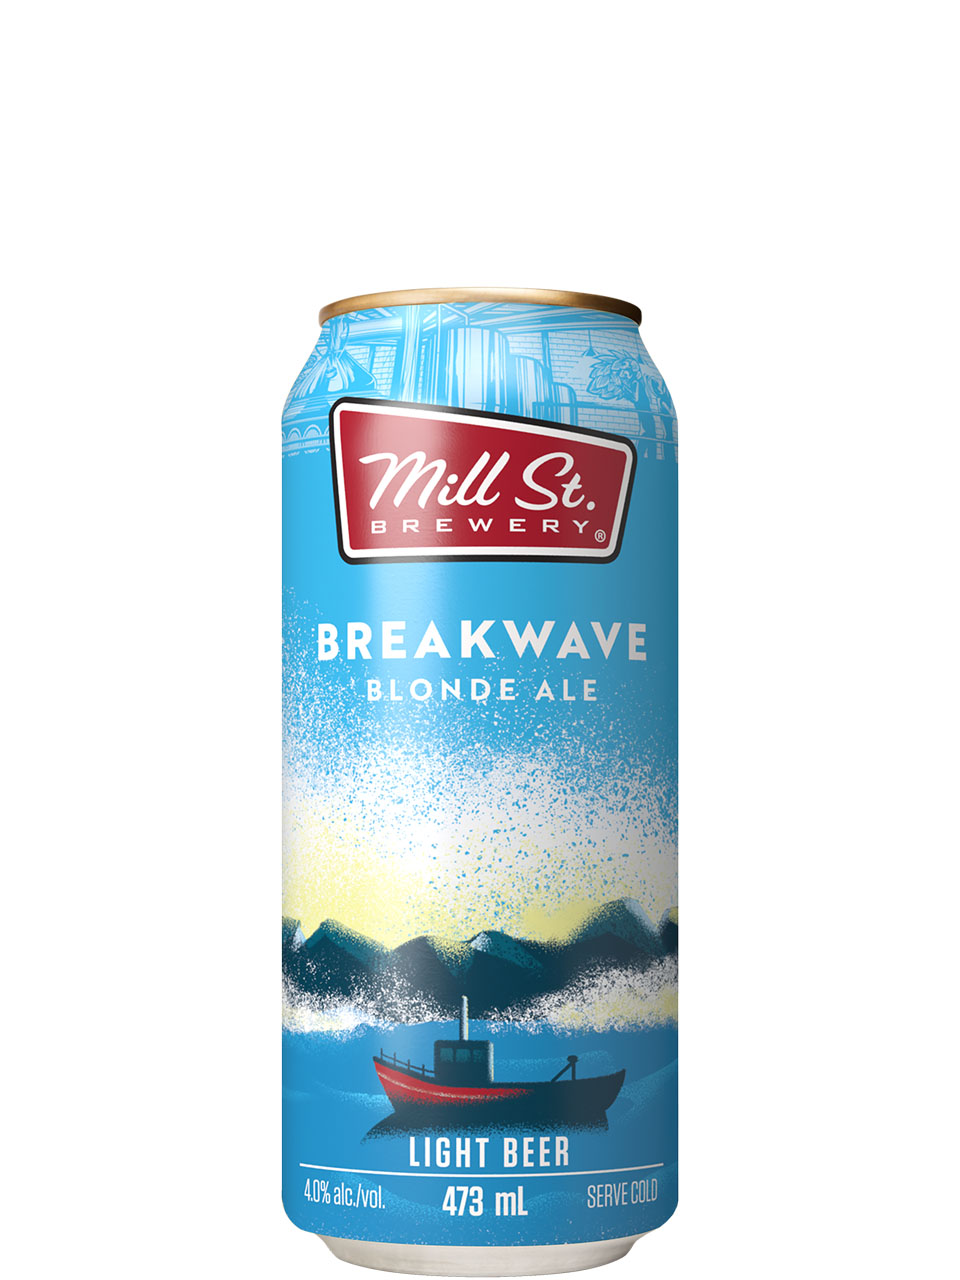 Mill St. Breakwave Blonde Ale 473ml Can